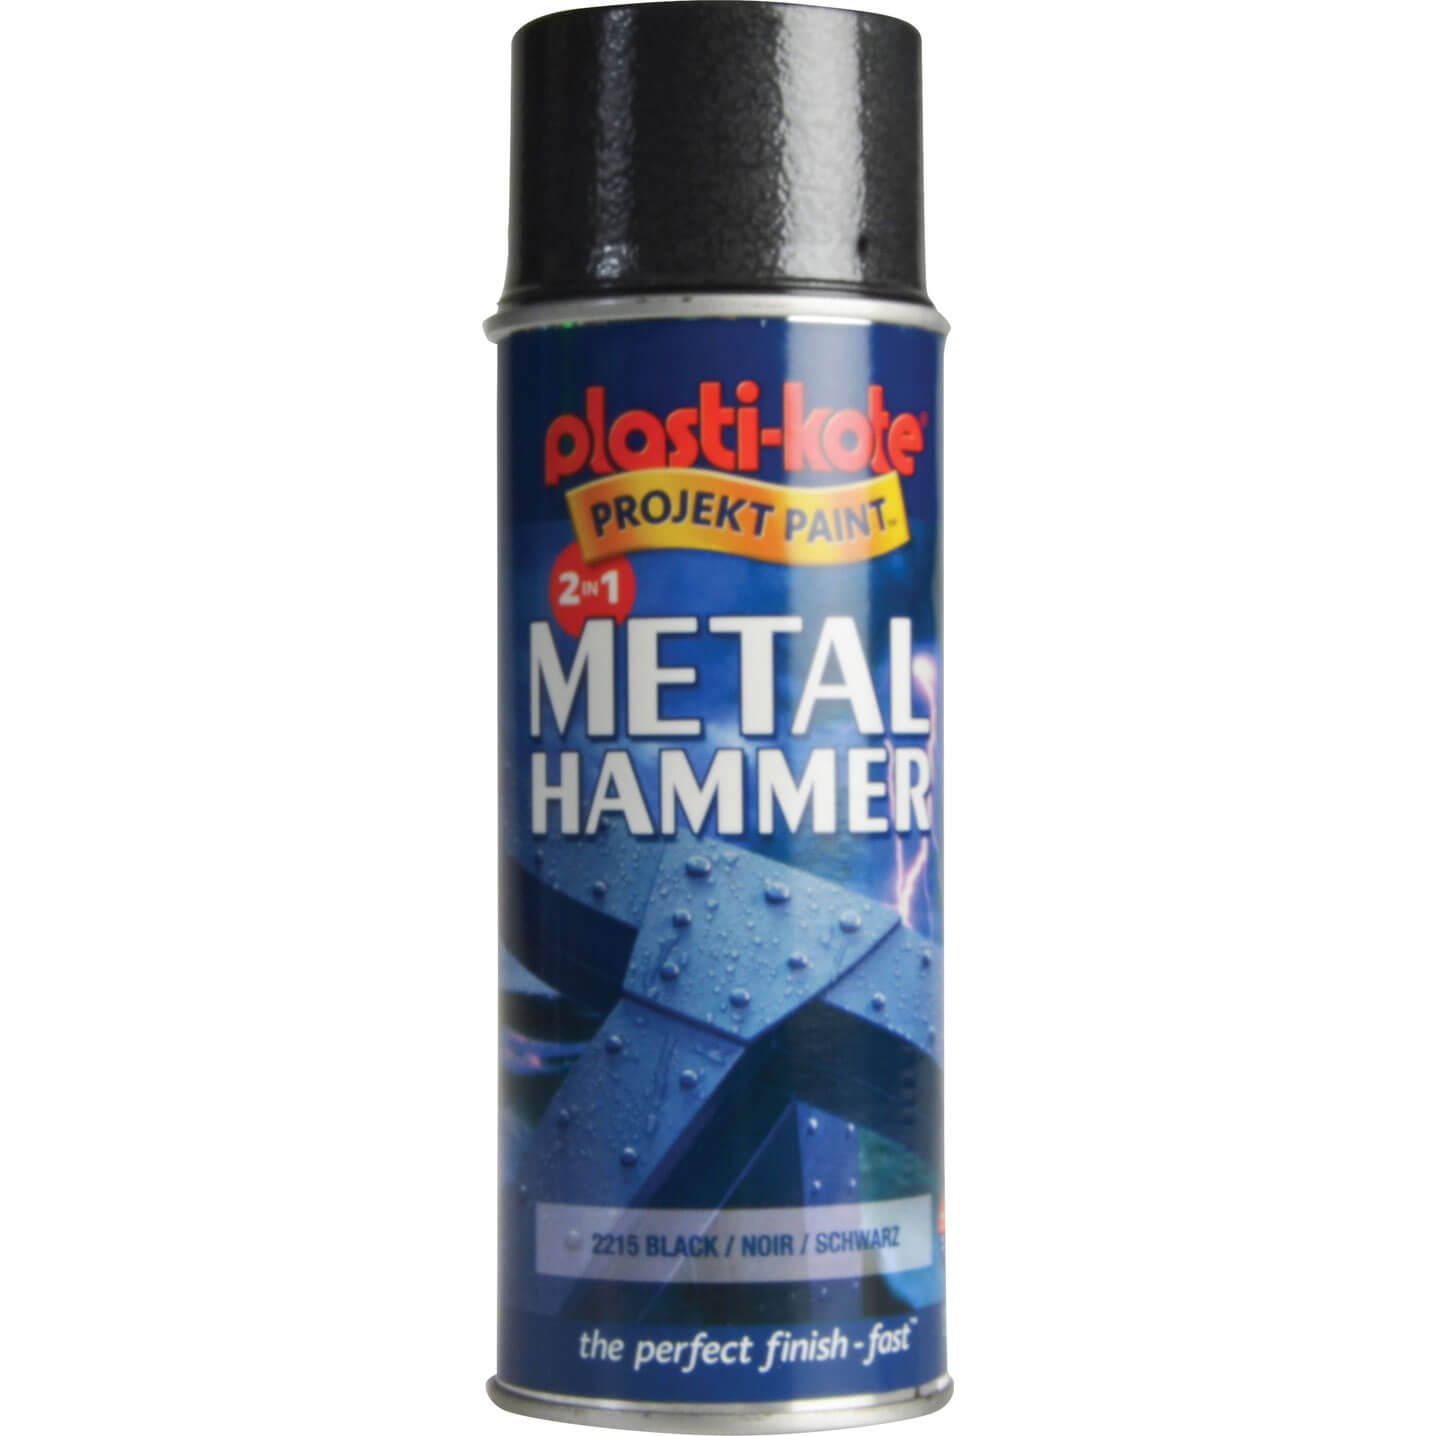 Image of Plastikote Metal Paint Hammer Aerosol Spray Paint Black 400ml